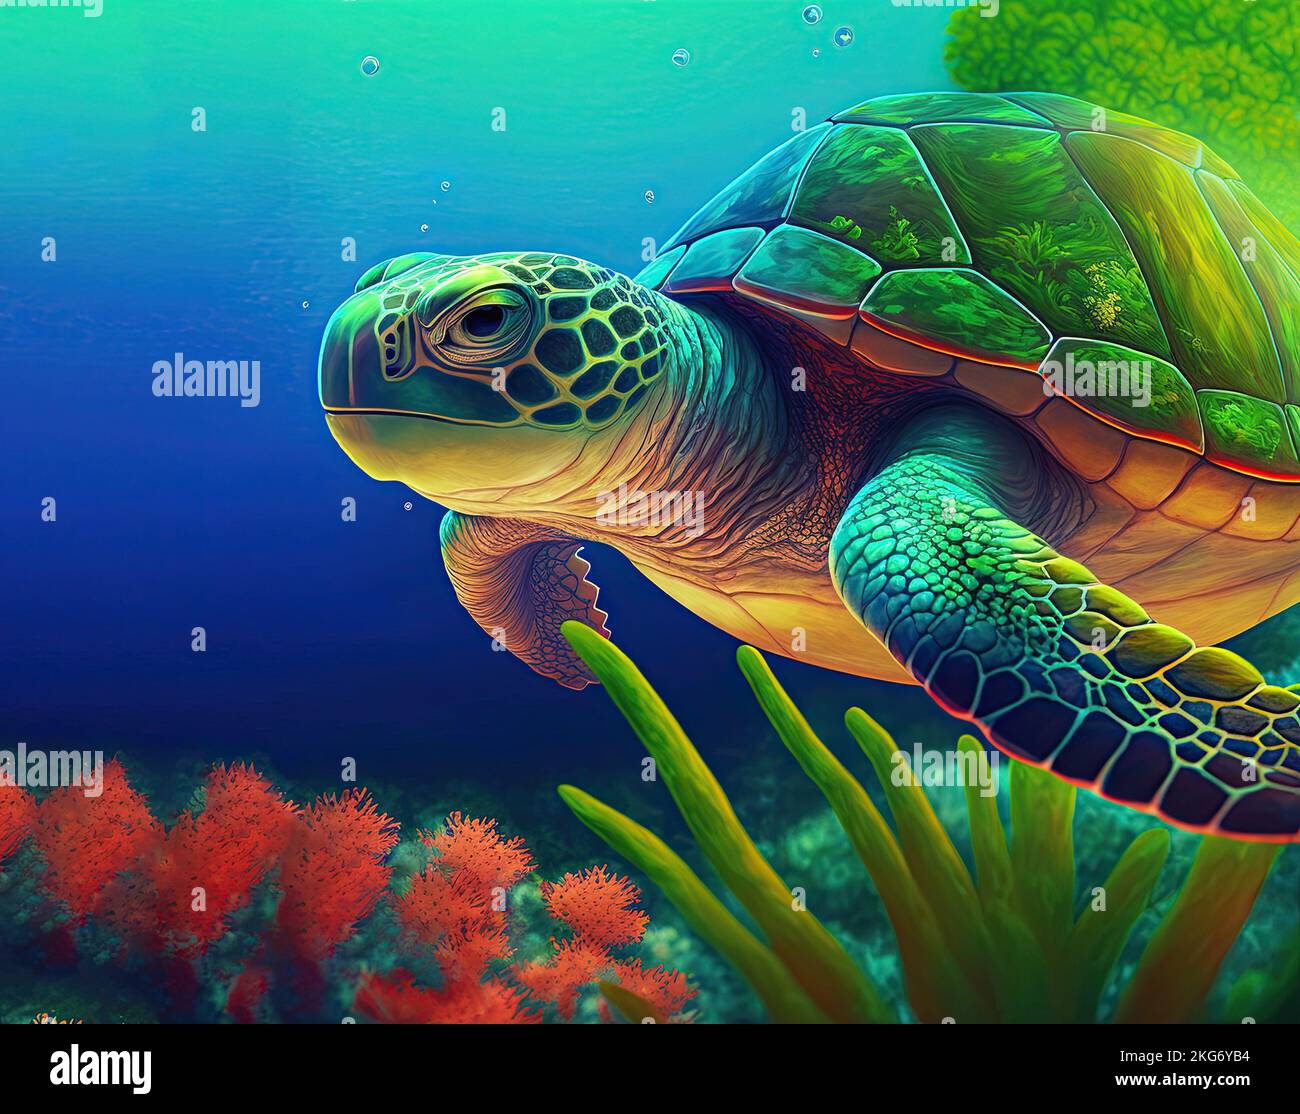 Grüne Meeresschildkröte, die im blauen Wasser eines tropischen Meeres mit Wasserpflanzen und Korallenriff schwimmt. Meeresschildkröte der Familie Cheloniidae Stockfoto